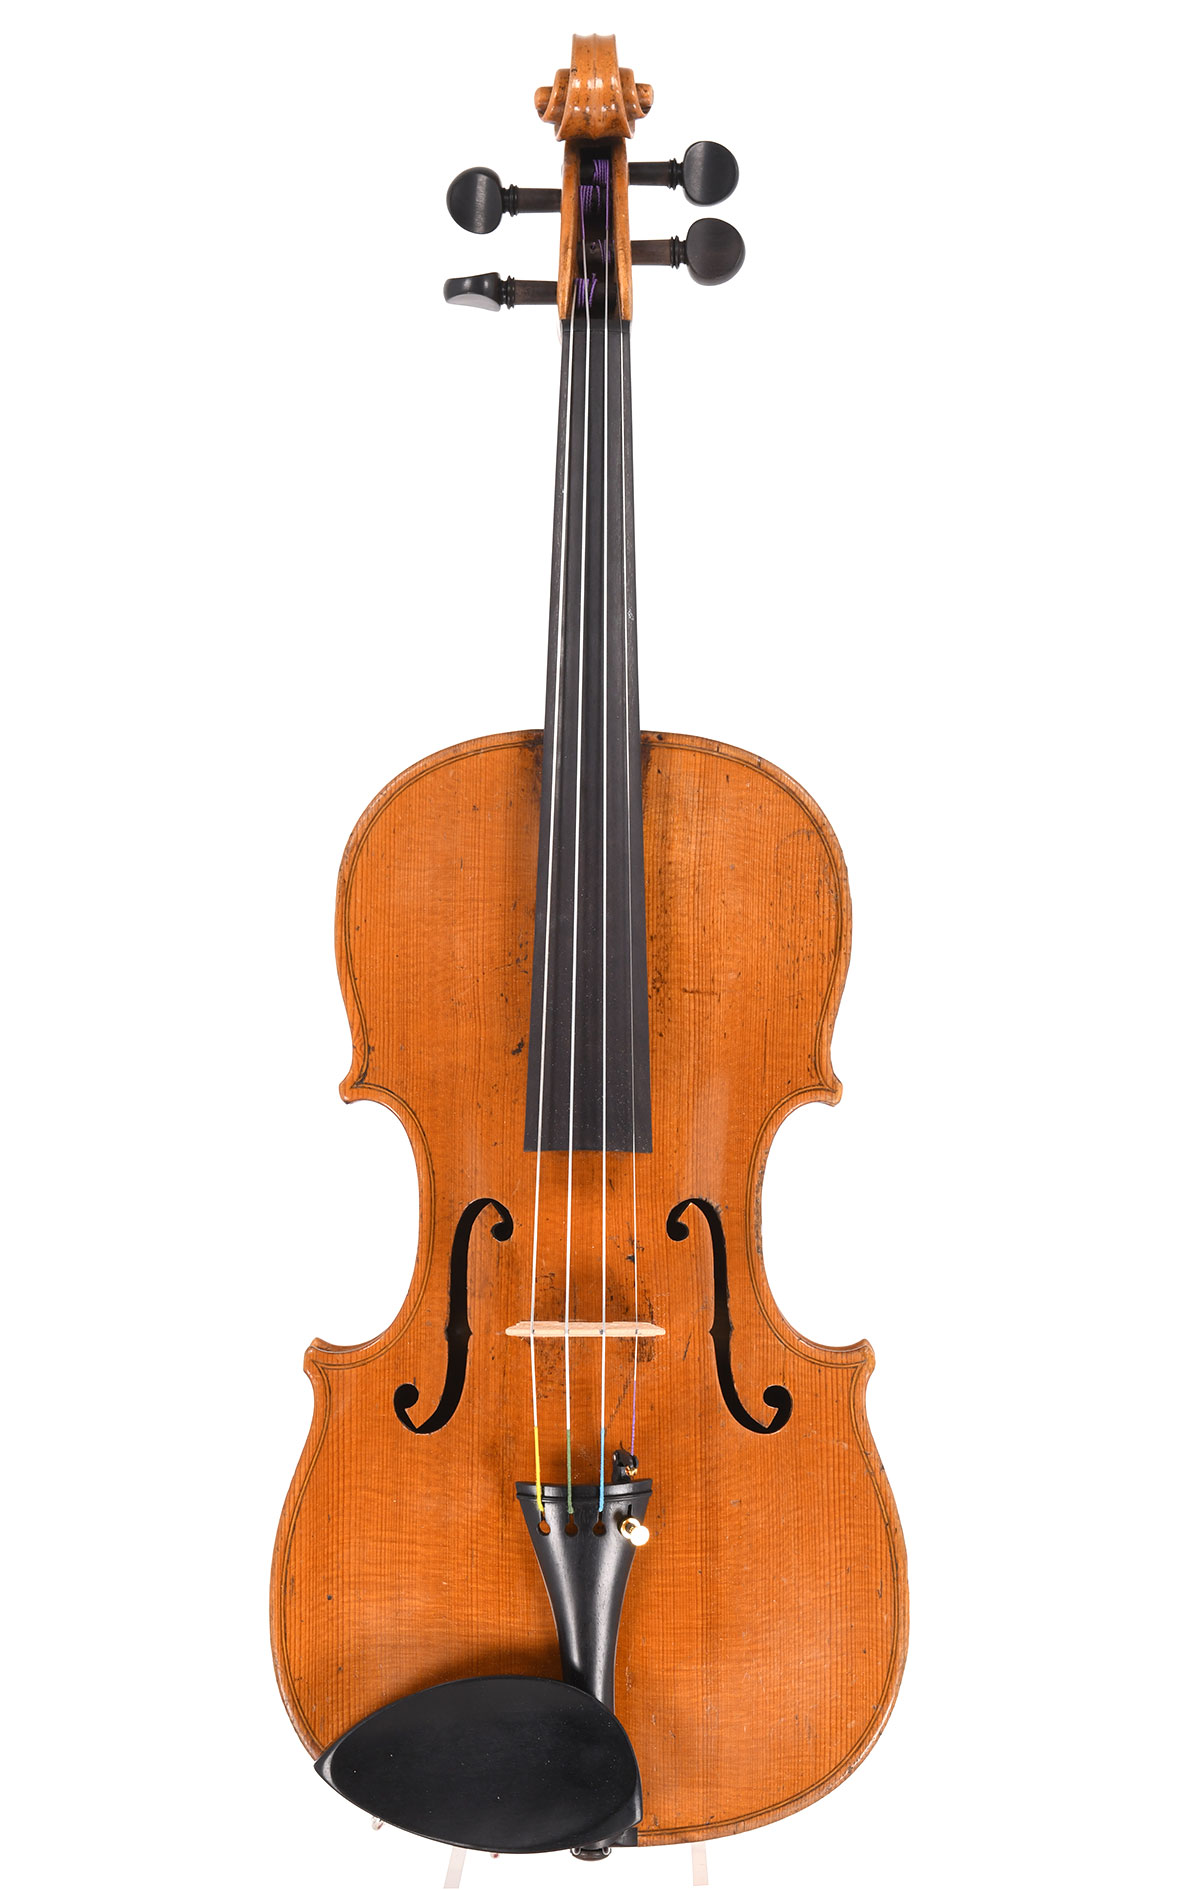 David Hopf violin from Klingenthal